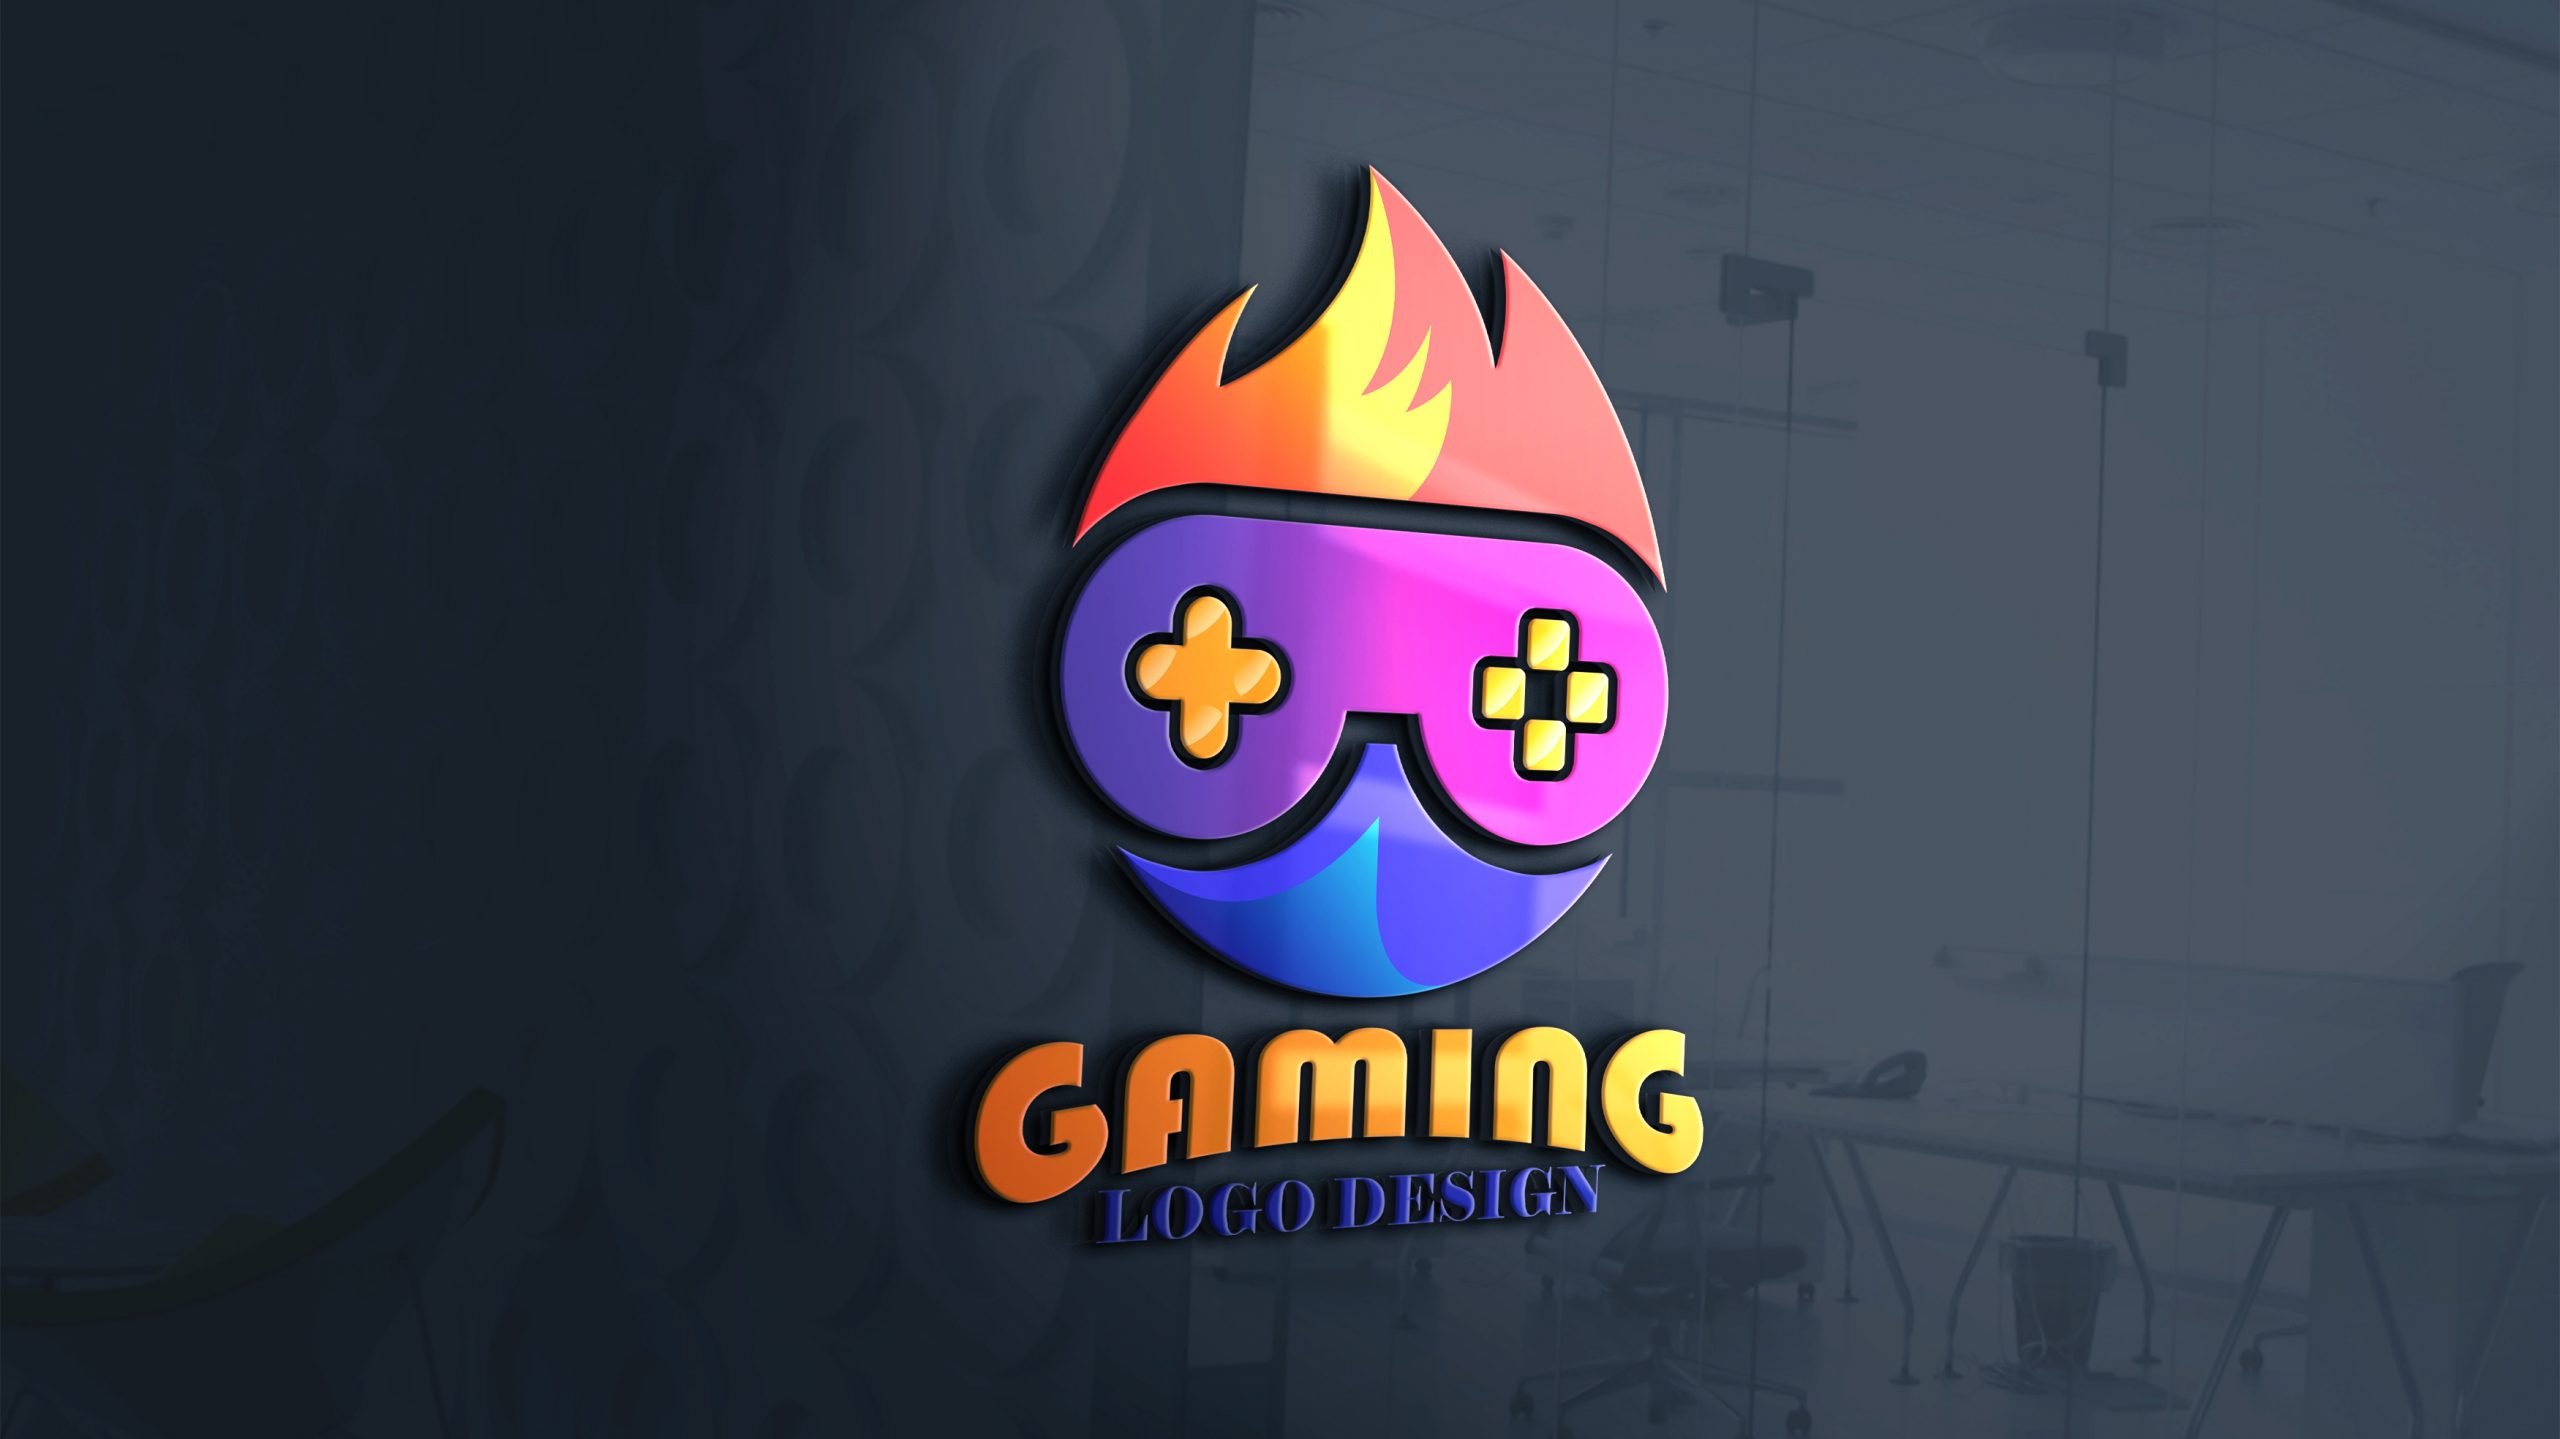 gamer logo design